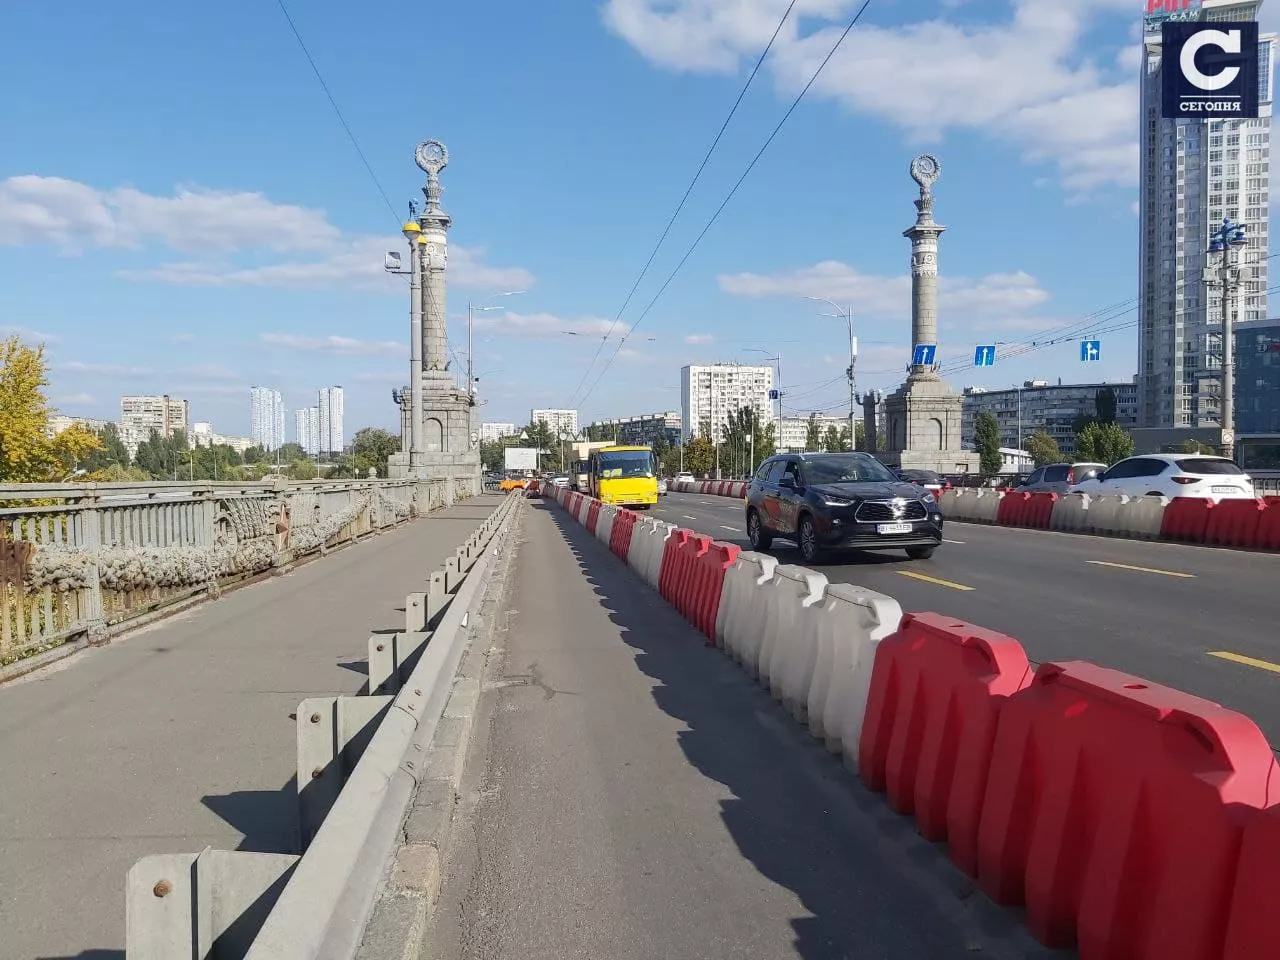 Міст Патона у Києві